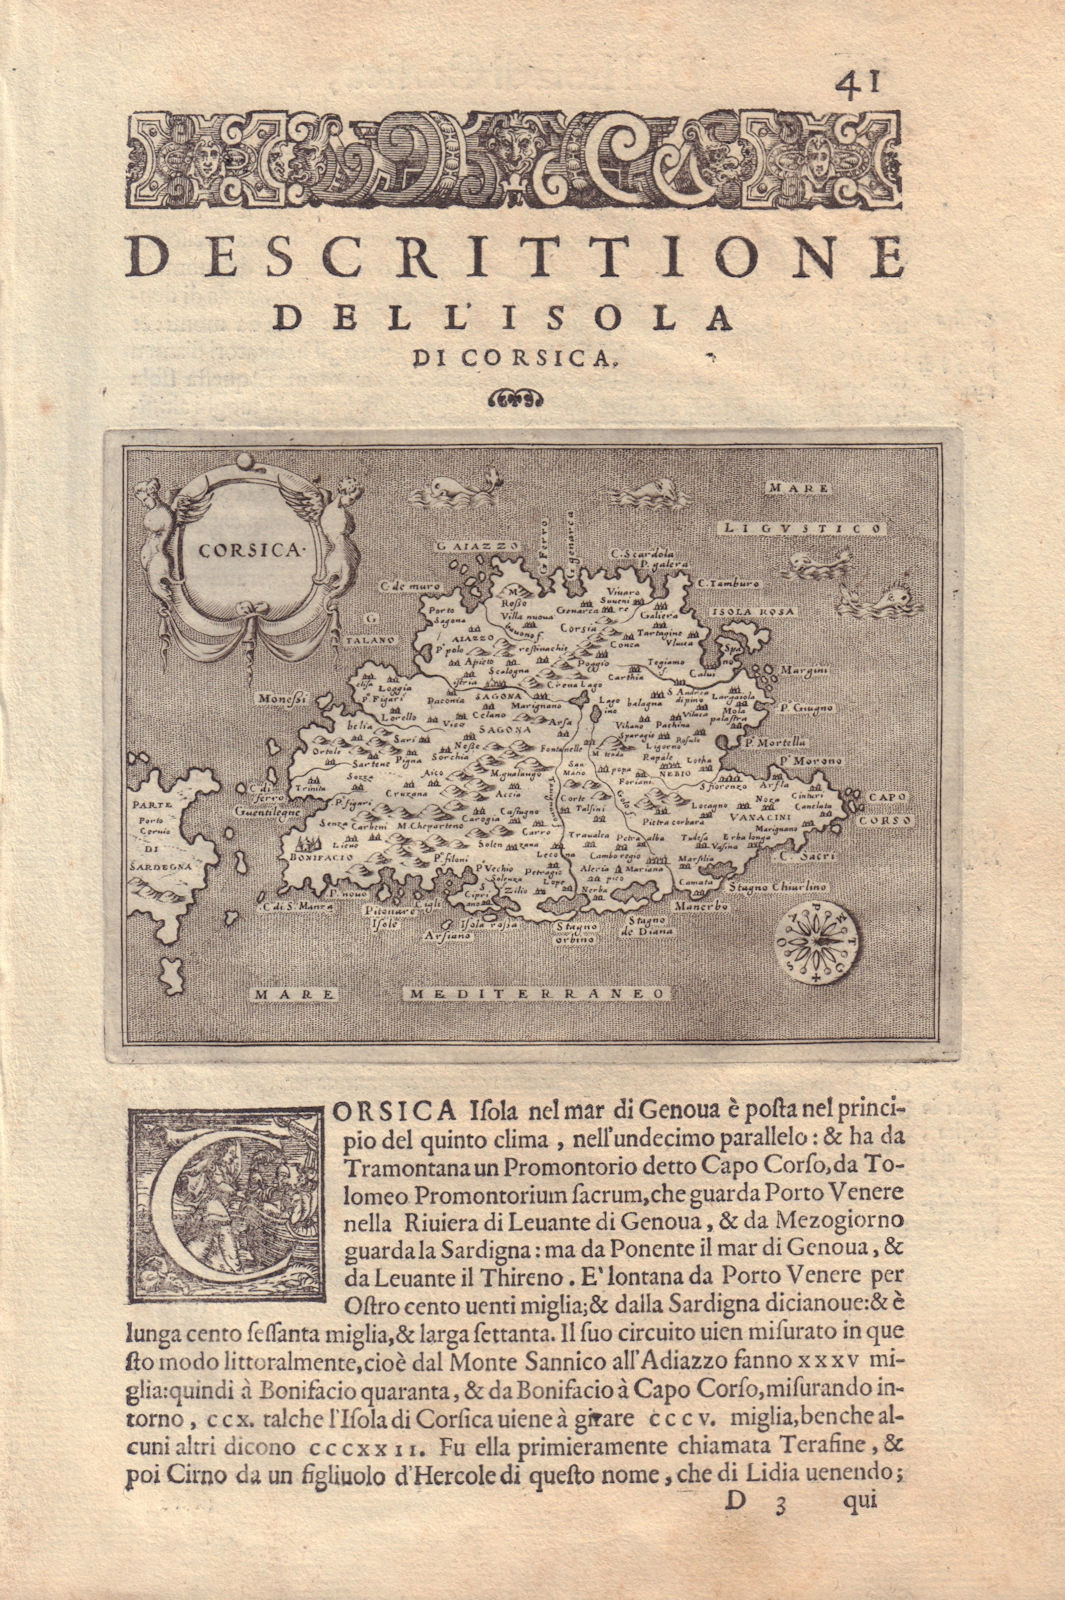 Associate Product Descrittione dell' Isola di Corsica. PORCACCHI. France 1590 old antique map